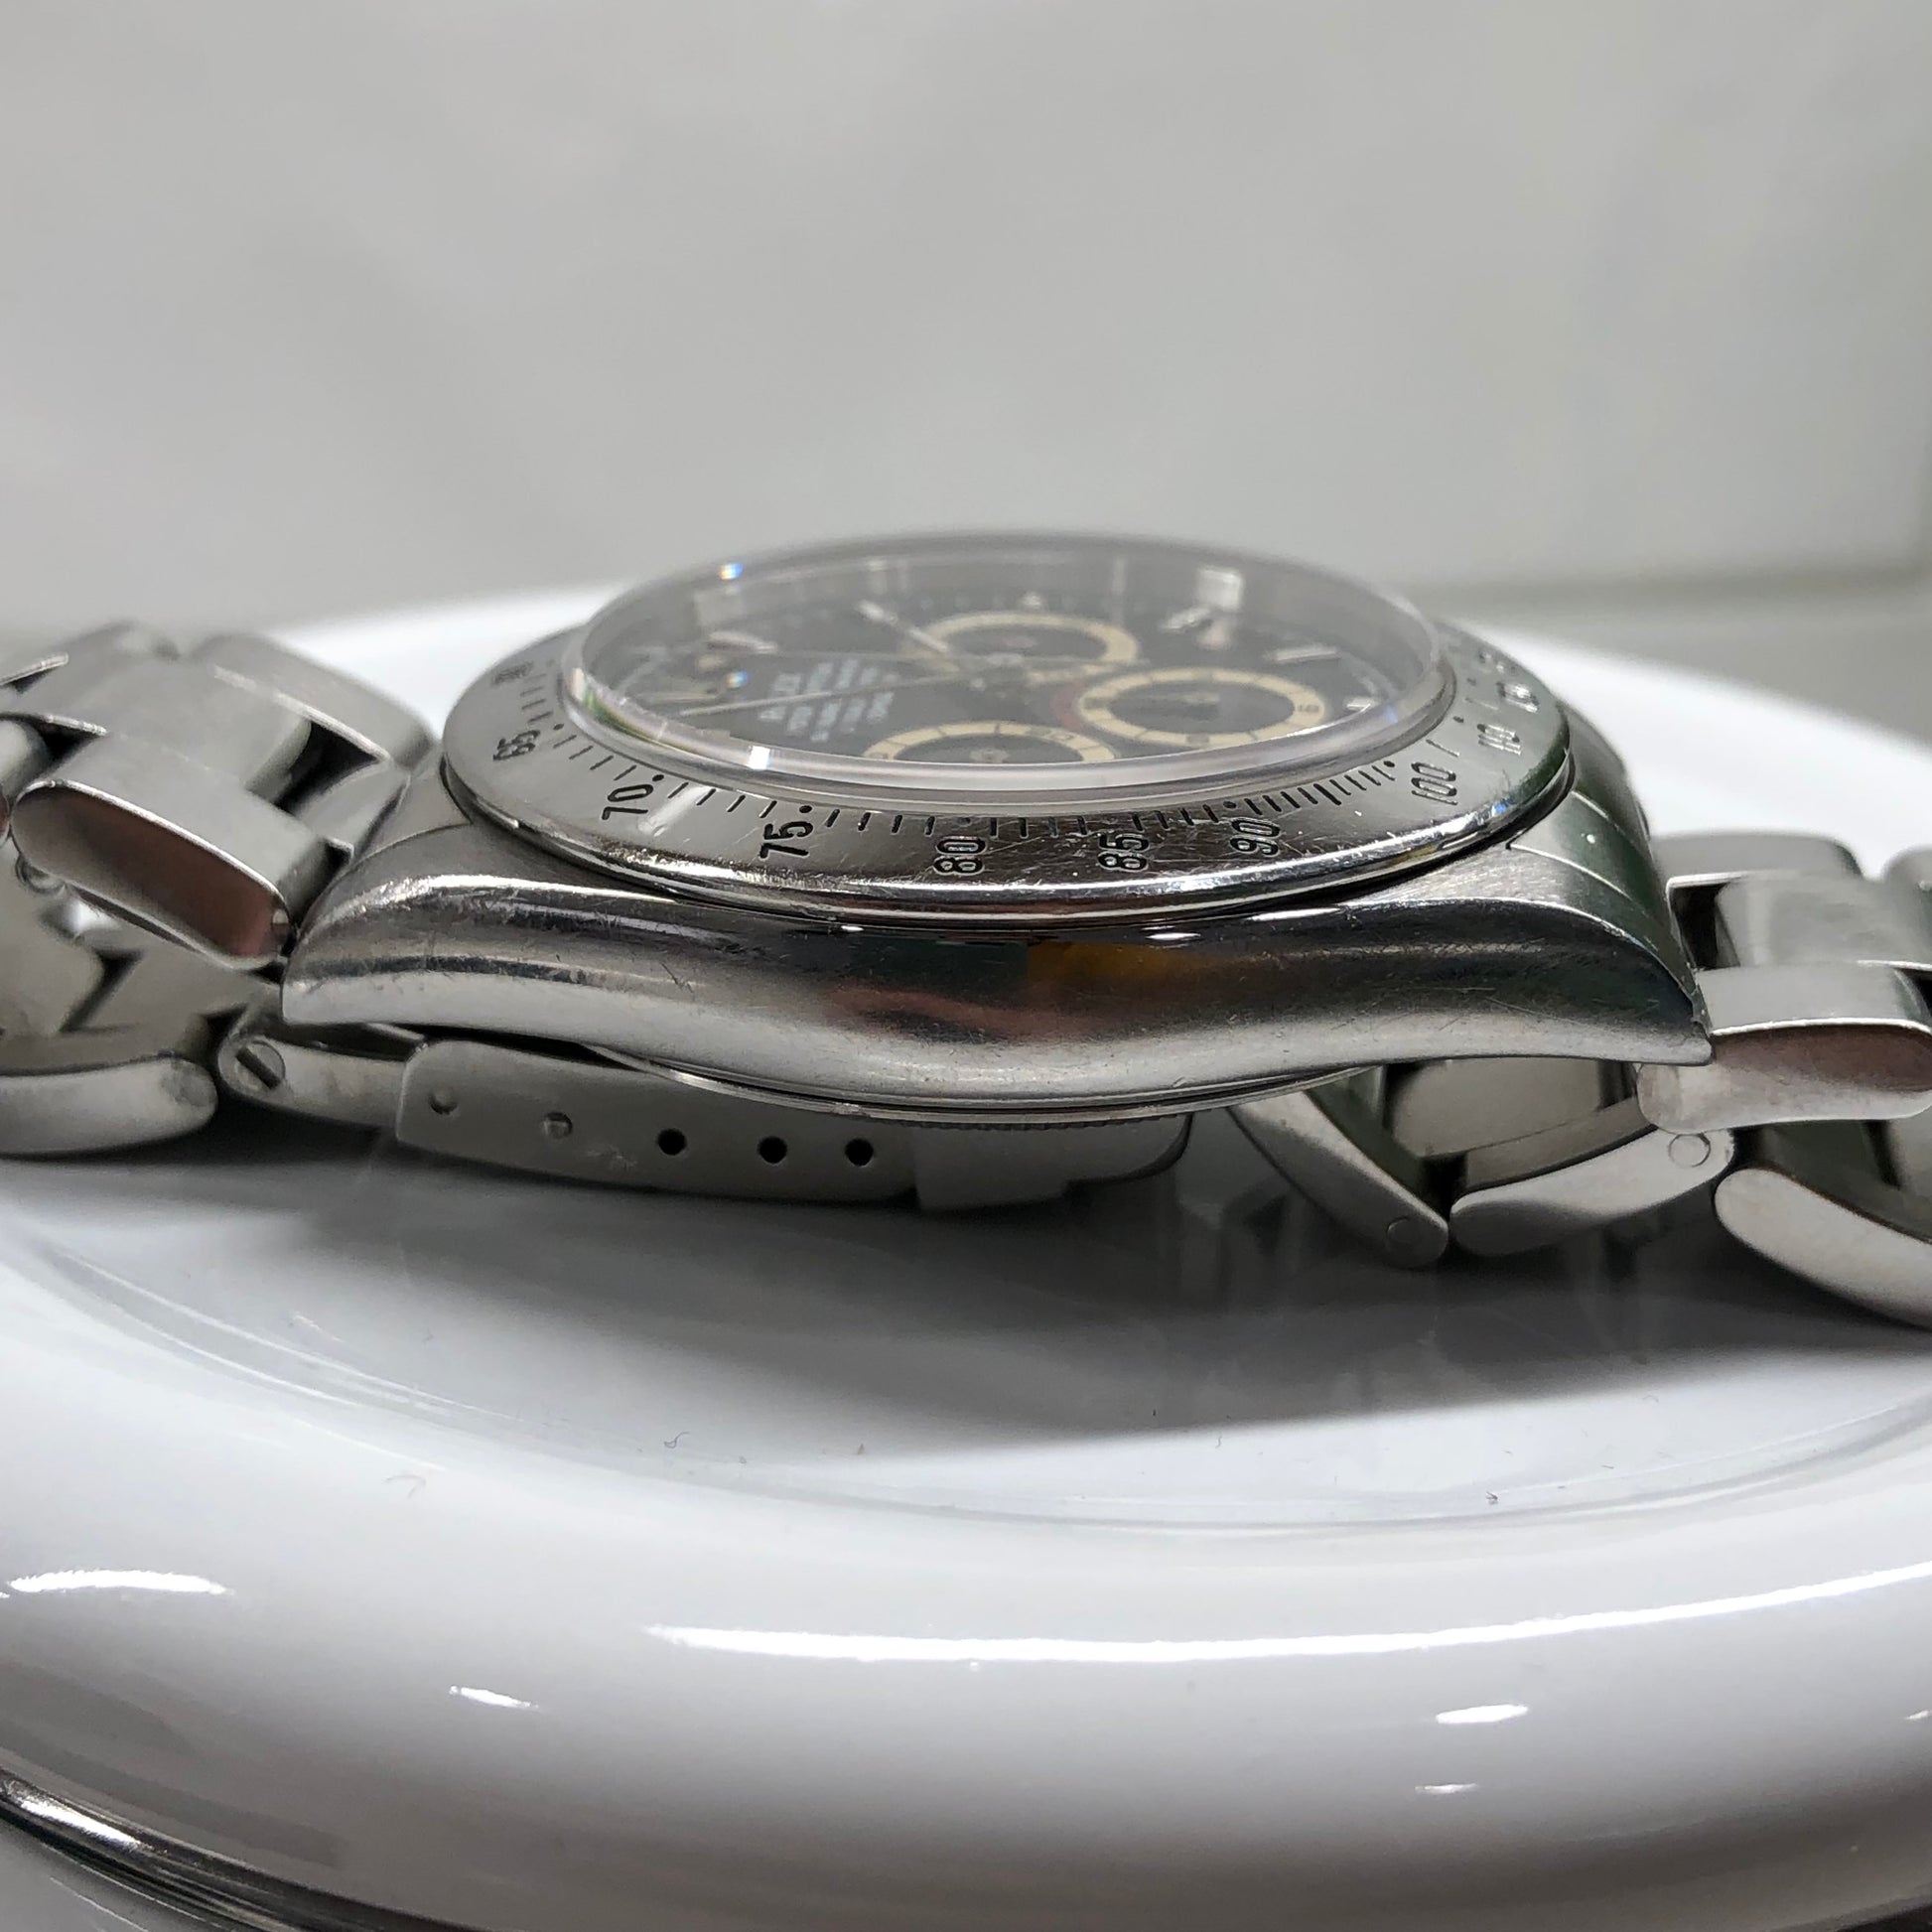 1995 Rolex Daytona Zenith 16520 Patrizzi Black Dial Steel Automatic Chronograph Wristwatch - Hashtag Watch Company